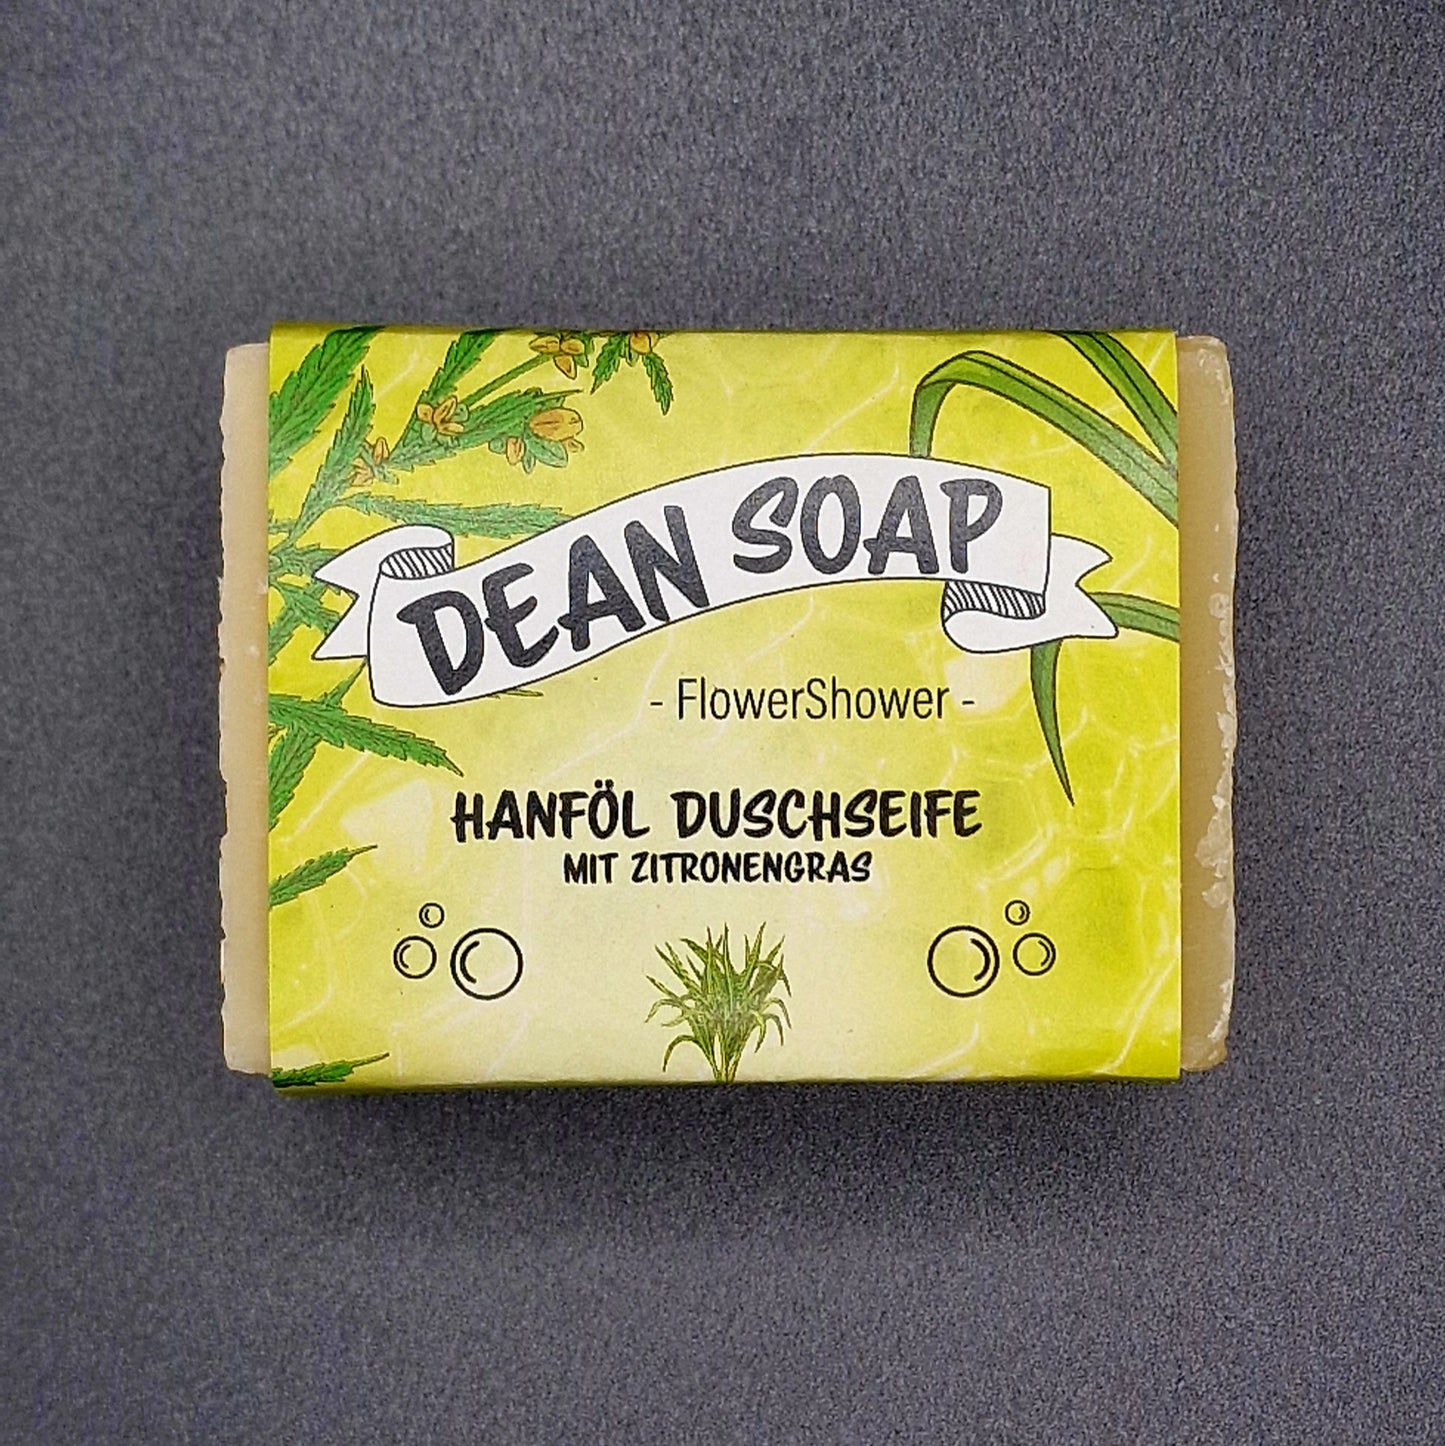 Deansoap - Hanföl Duschseife - vegan & handgefertigt